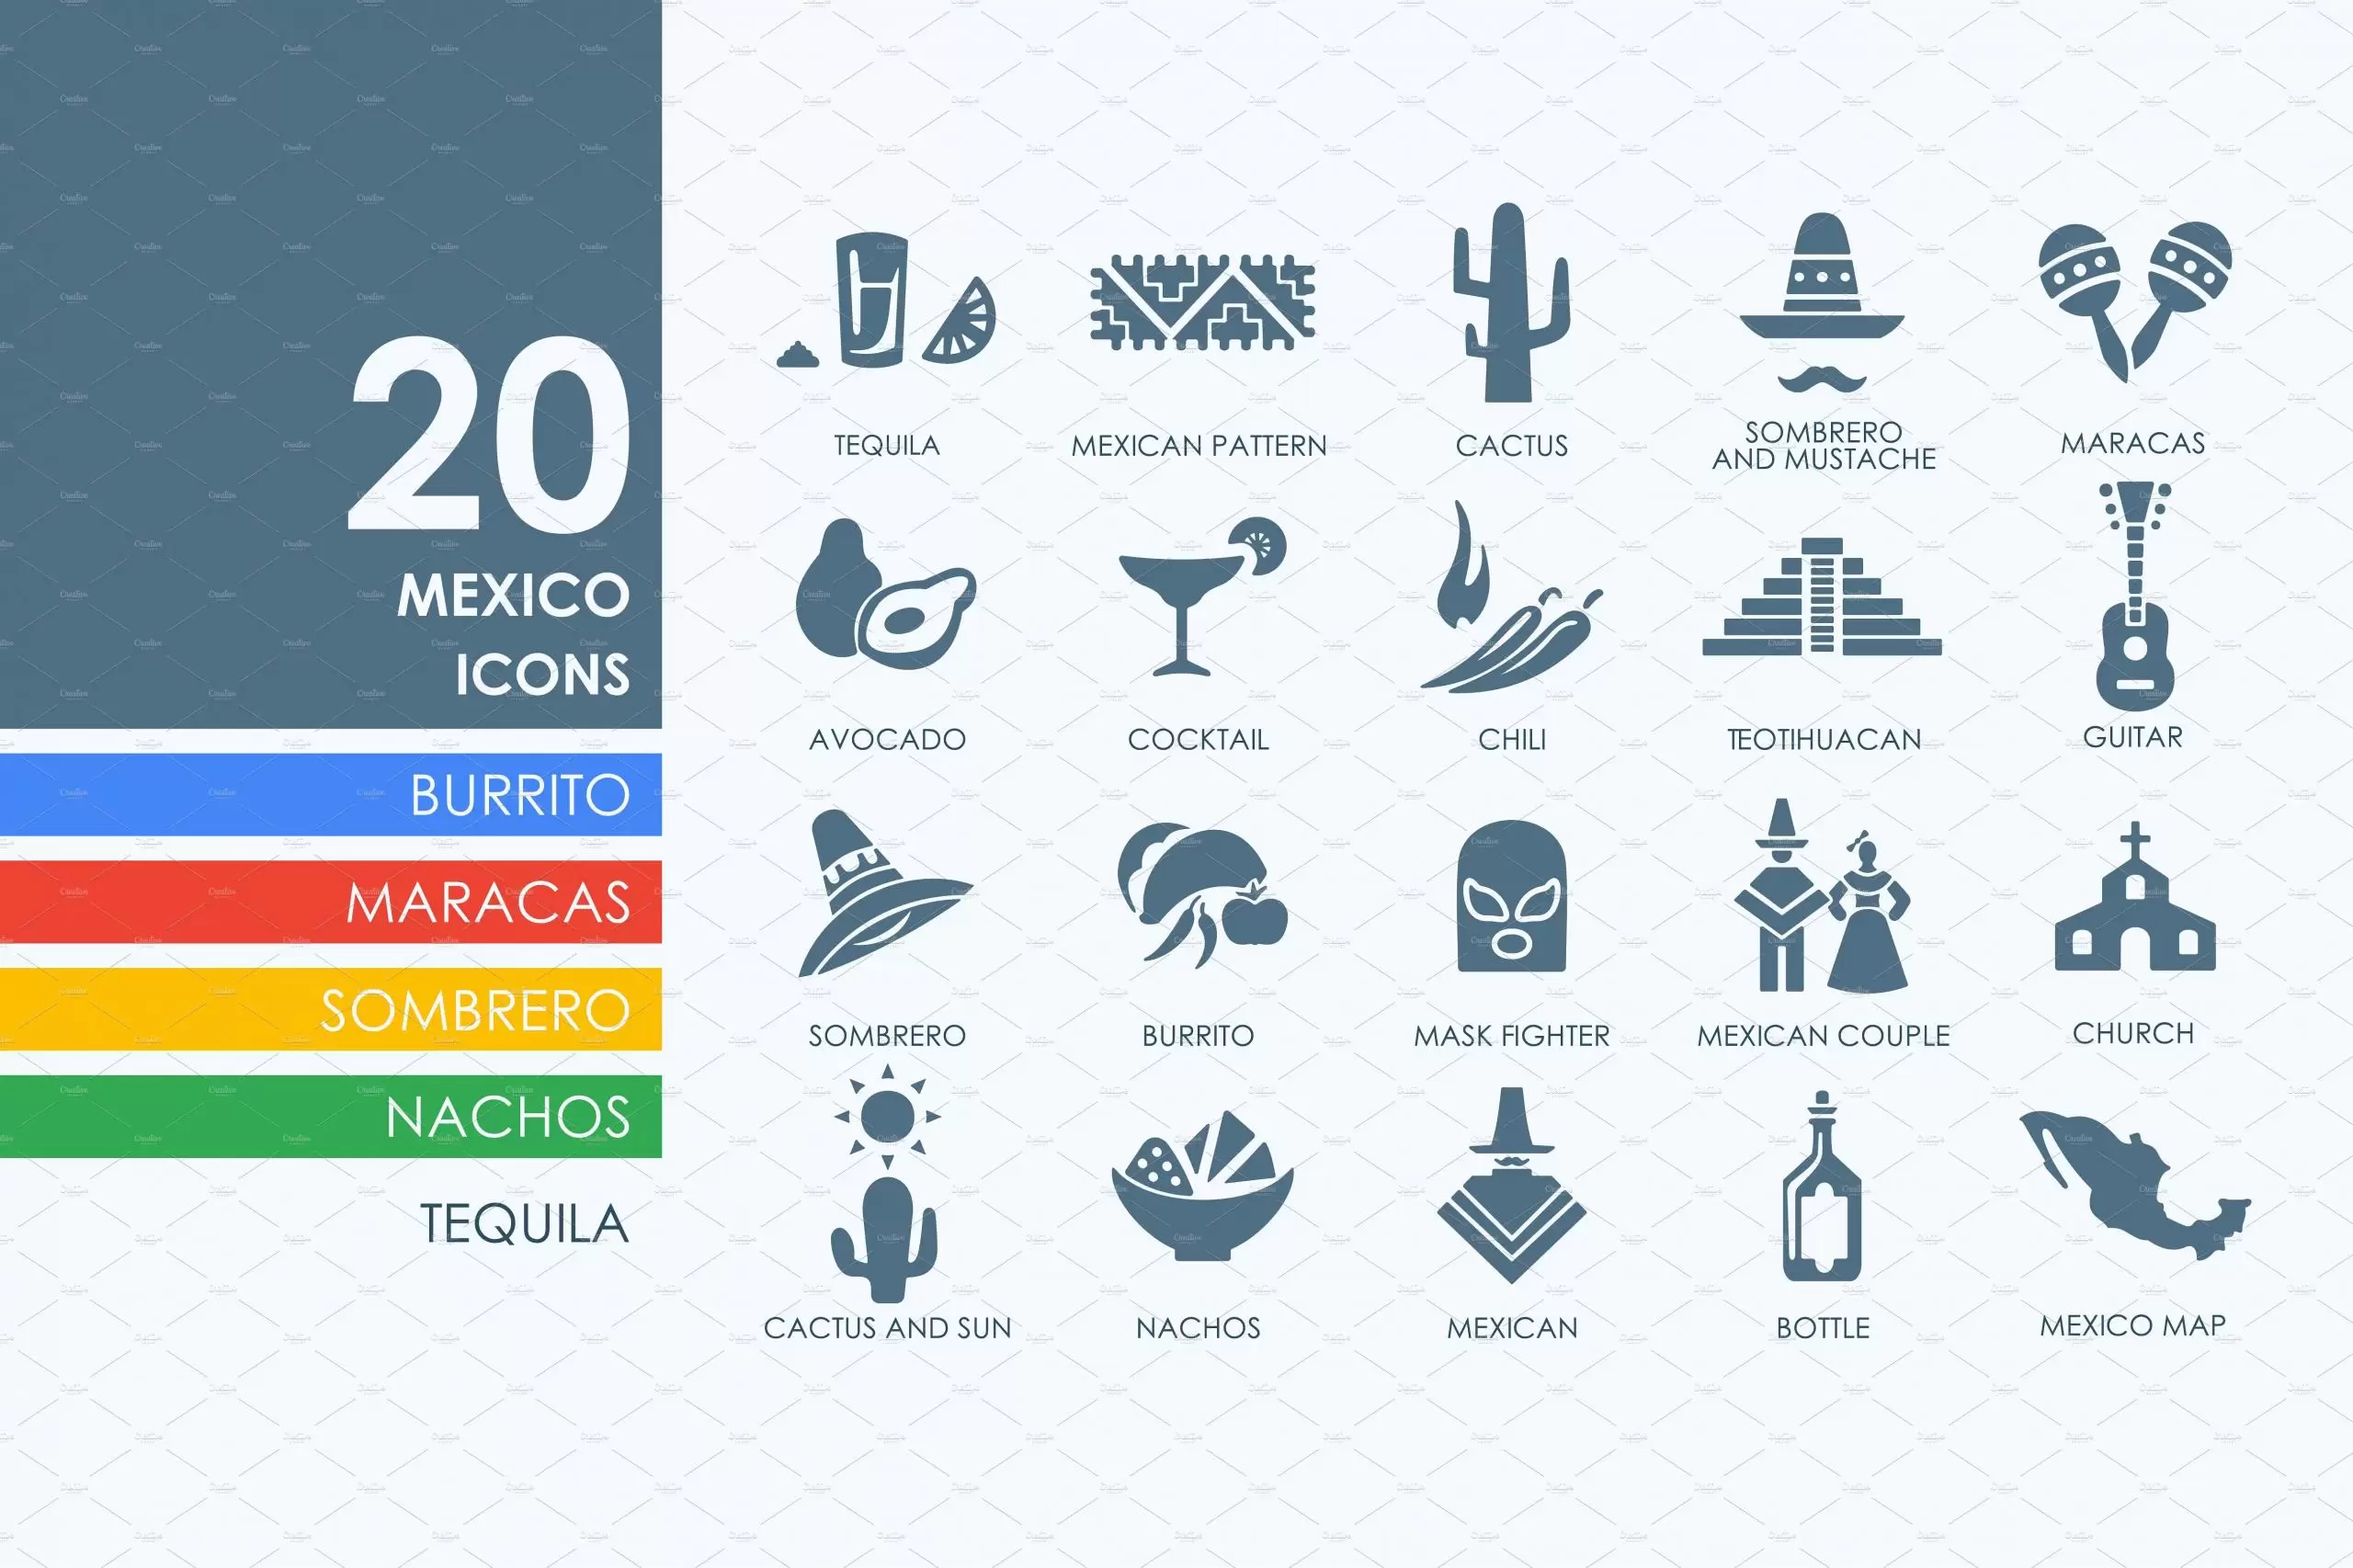 墨西哥矢量图标素材 20 Mexico icons插图